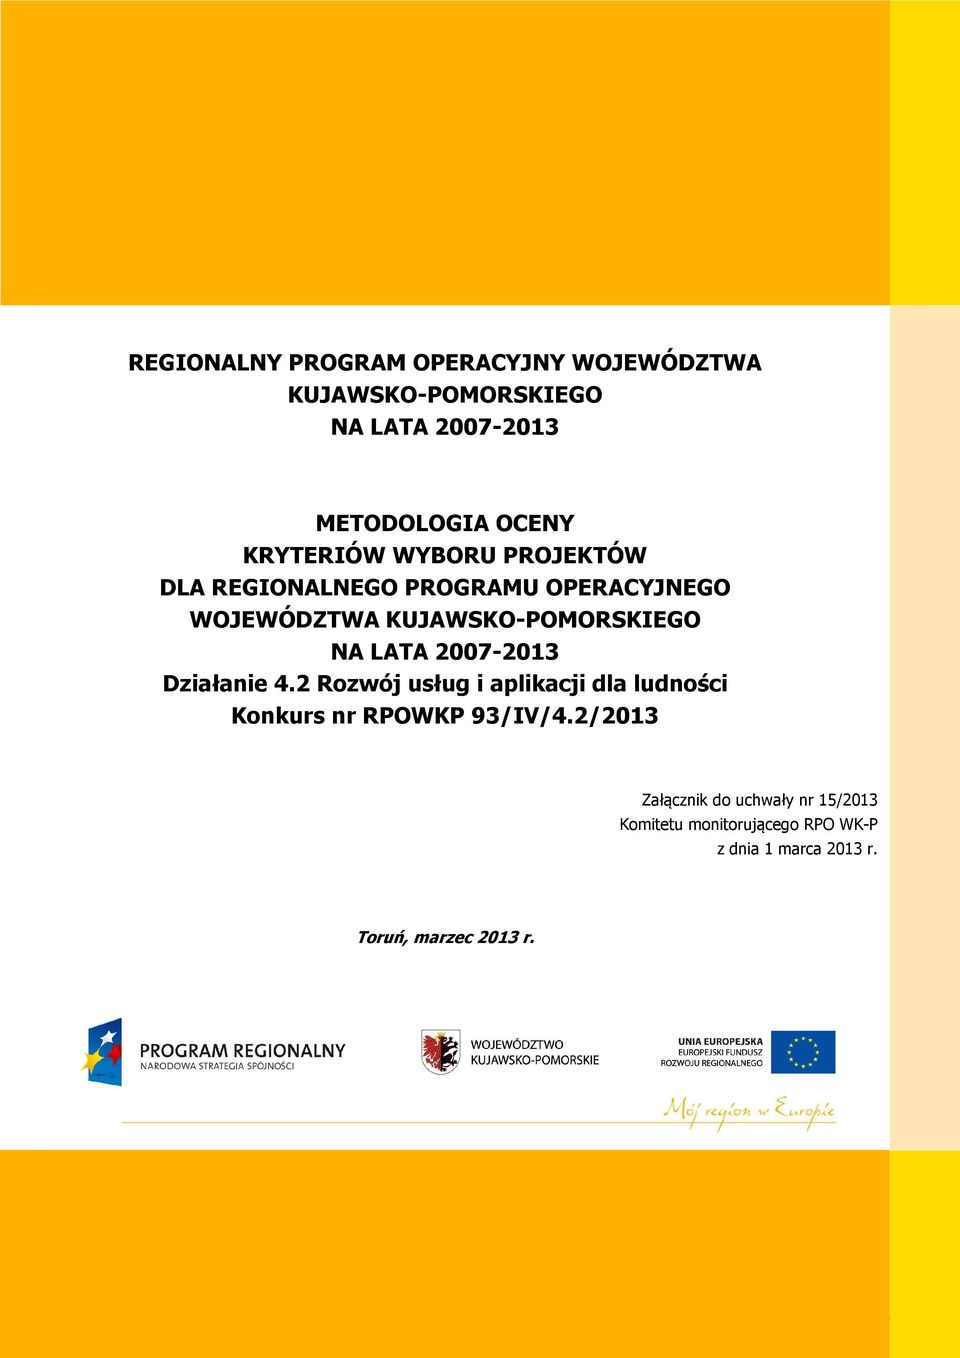 LATA 2007-2013 Działanie 4.2 Rozwój usług i aplikacji dla ludności Konkurs nr RPOWKP 93/IV/4.